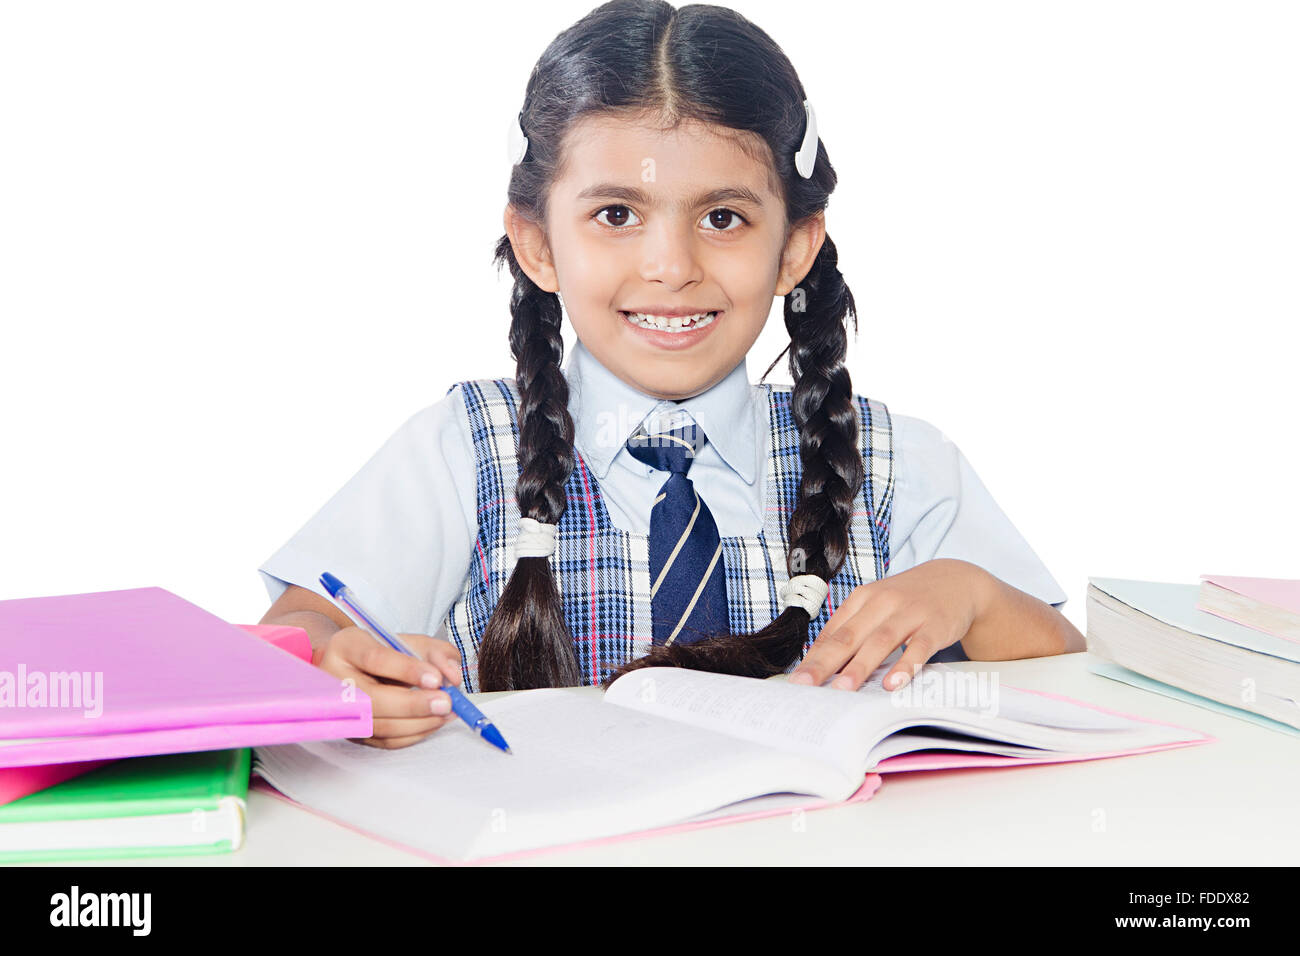 Nur 1 Person Bildung Mädchen Junge lernen Schule Smiling Student Studium schreiben Stockfoto